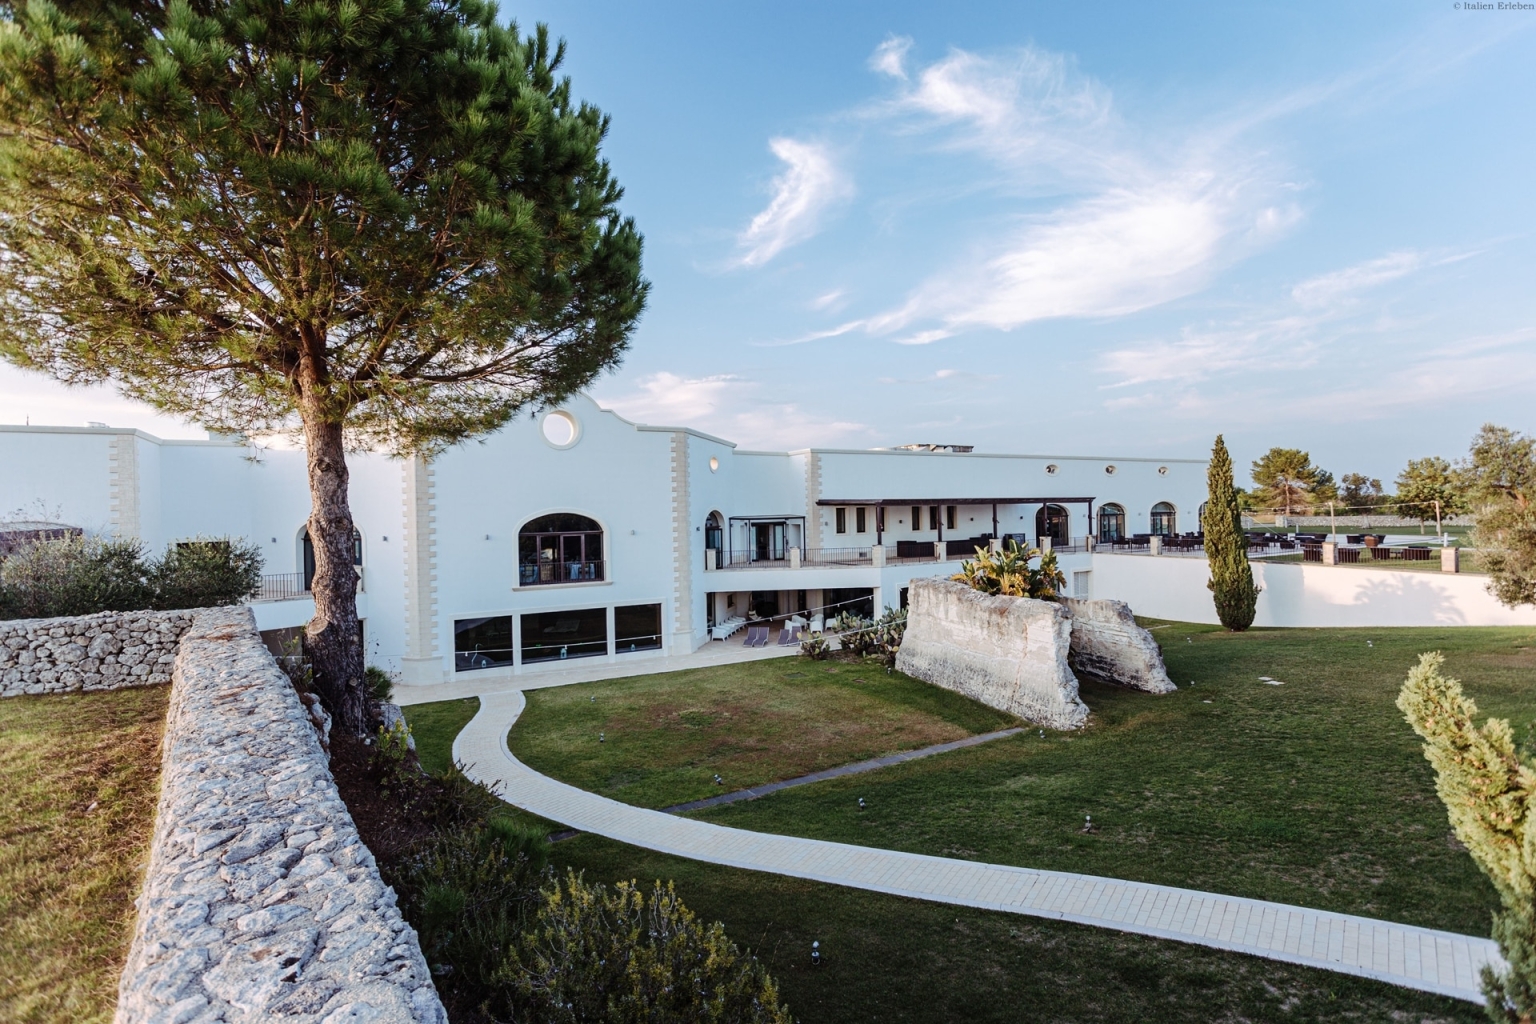 Apulien Golf Resort Acaya Lecce Salento 18 Loch Anlage modern Landschaft Wellness außen